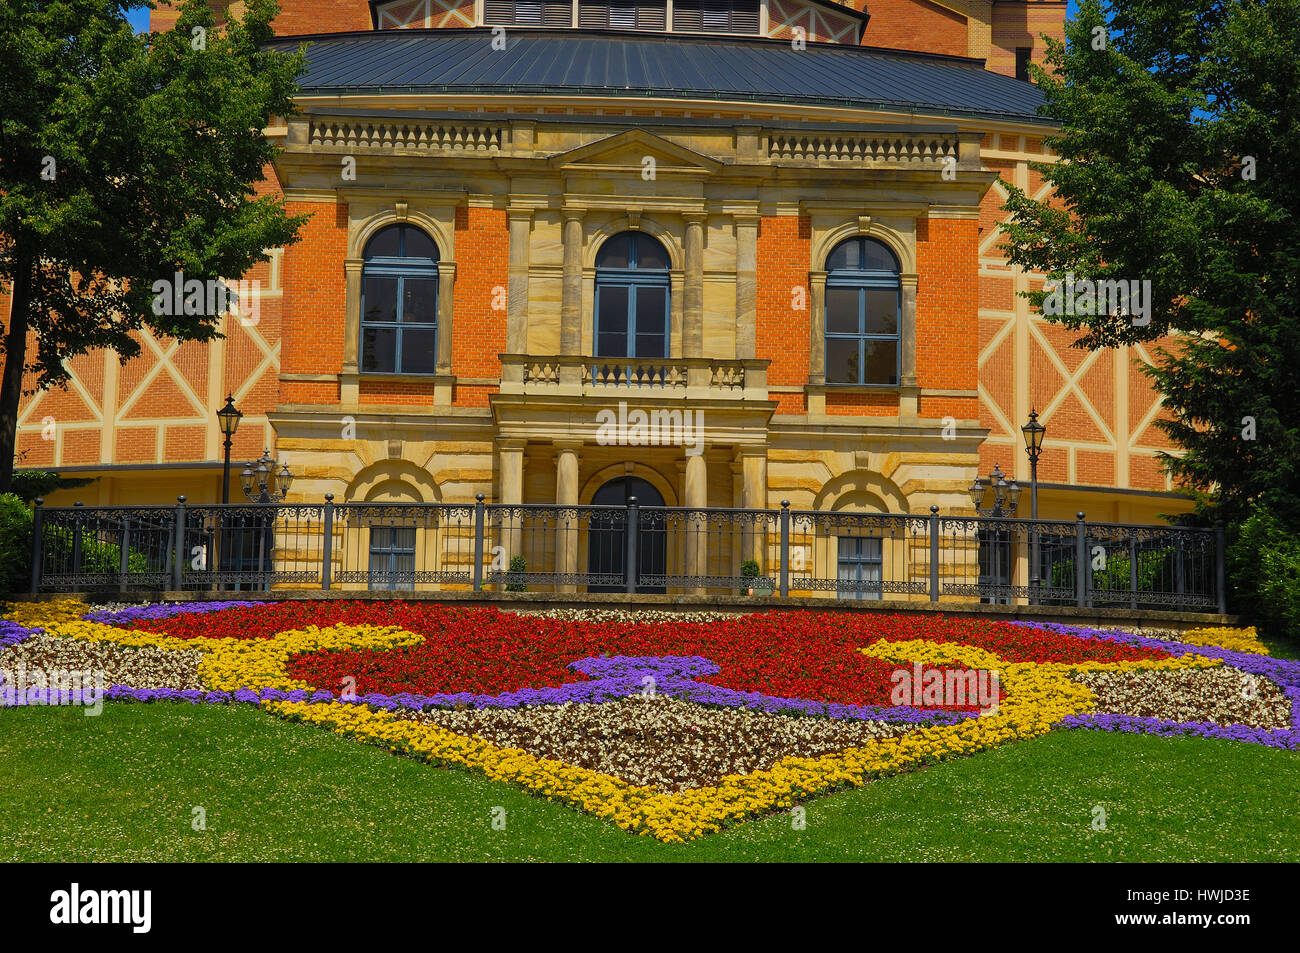 Bayreuth, Festival Oper von Richard Wagner, Bayreuther Festspielhaus, Opernhaus, Oberfranken, Franken, Bayern, Deutschland Stockfoto